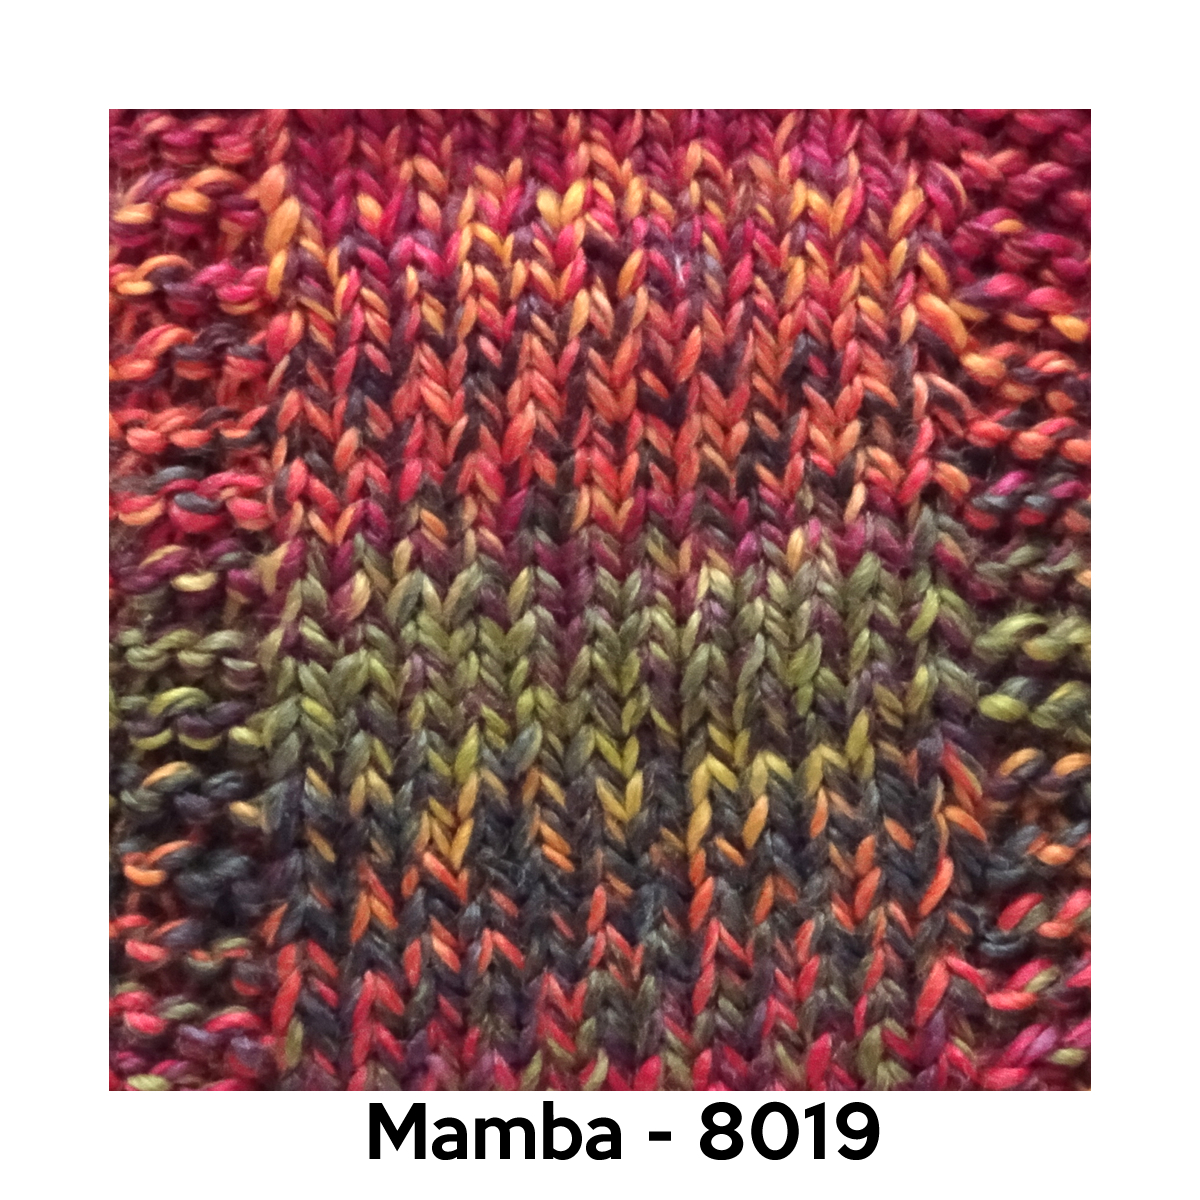 Mamba - 8019